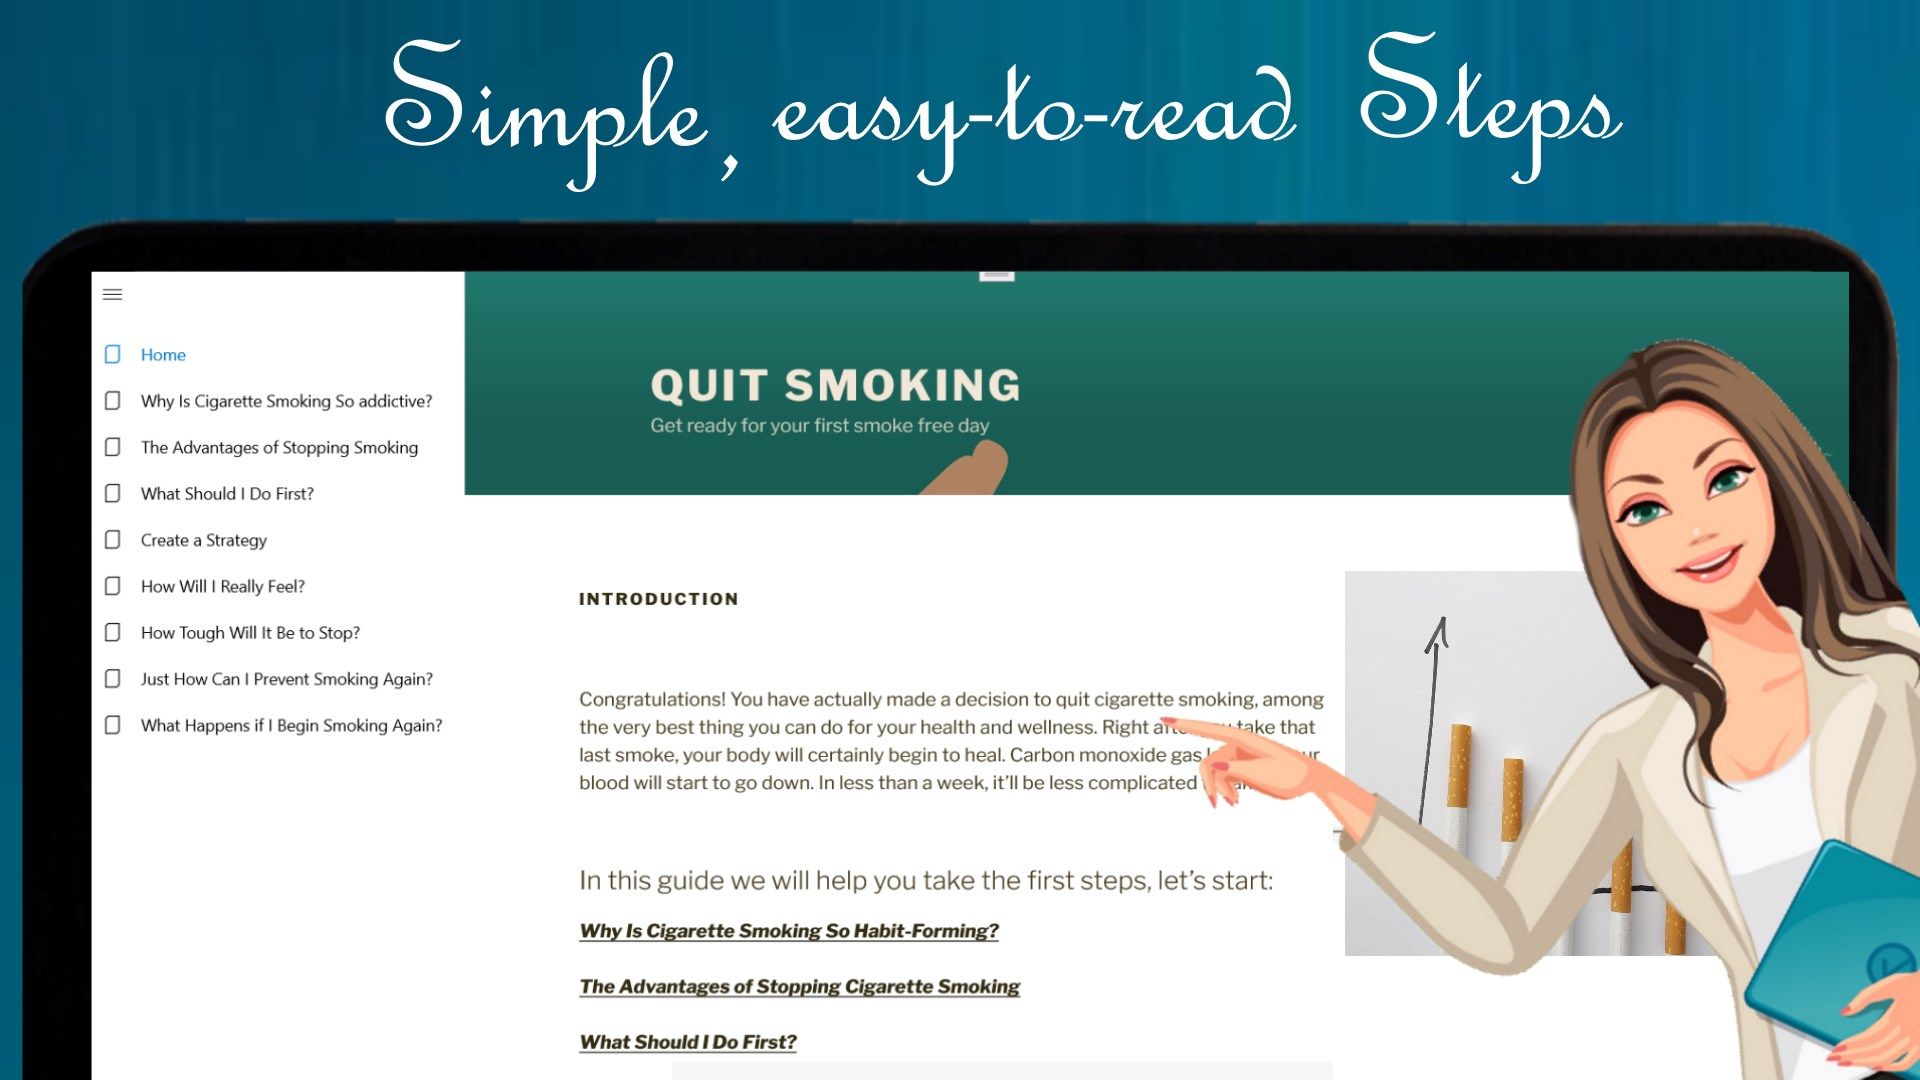 Quit Smoking Guide: Smoke Stop